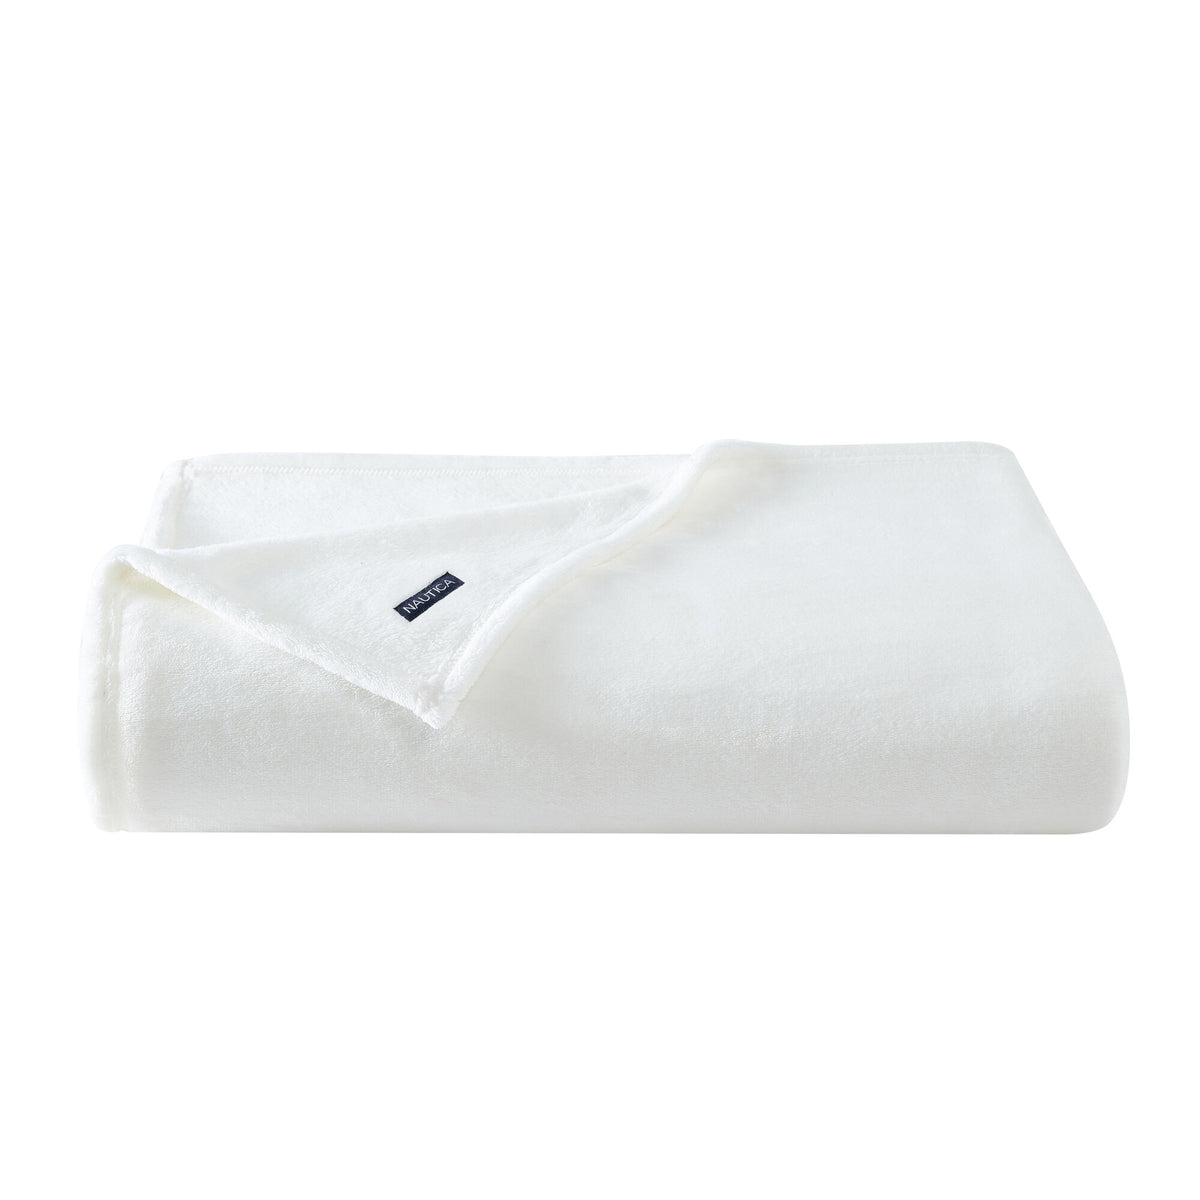 Nautica Solid White Ultra Plush Soft King Blanket Antique White Wash